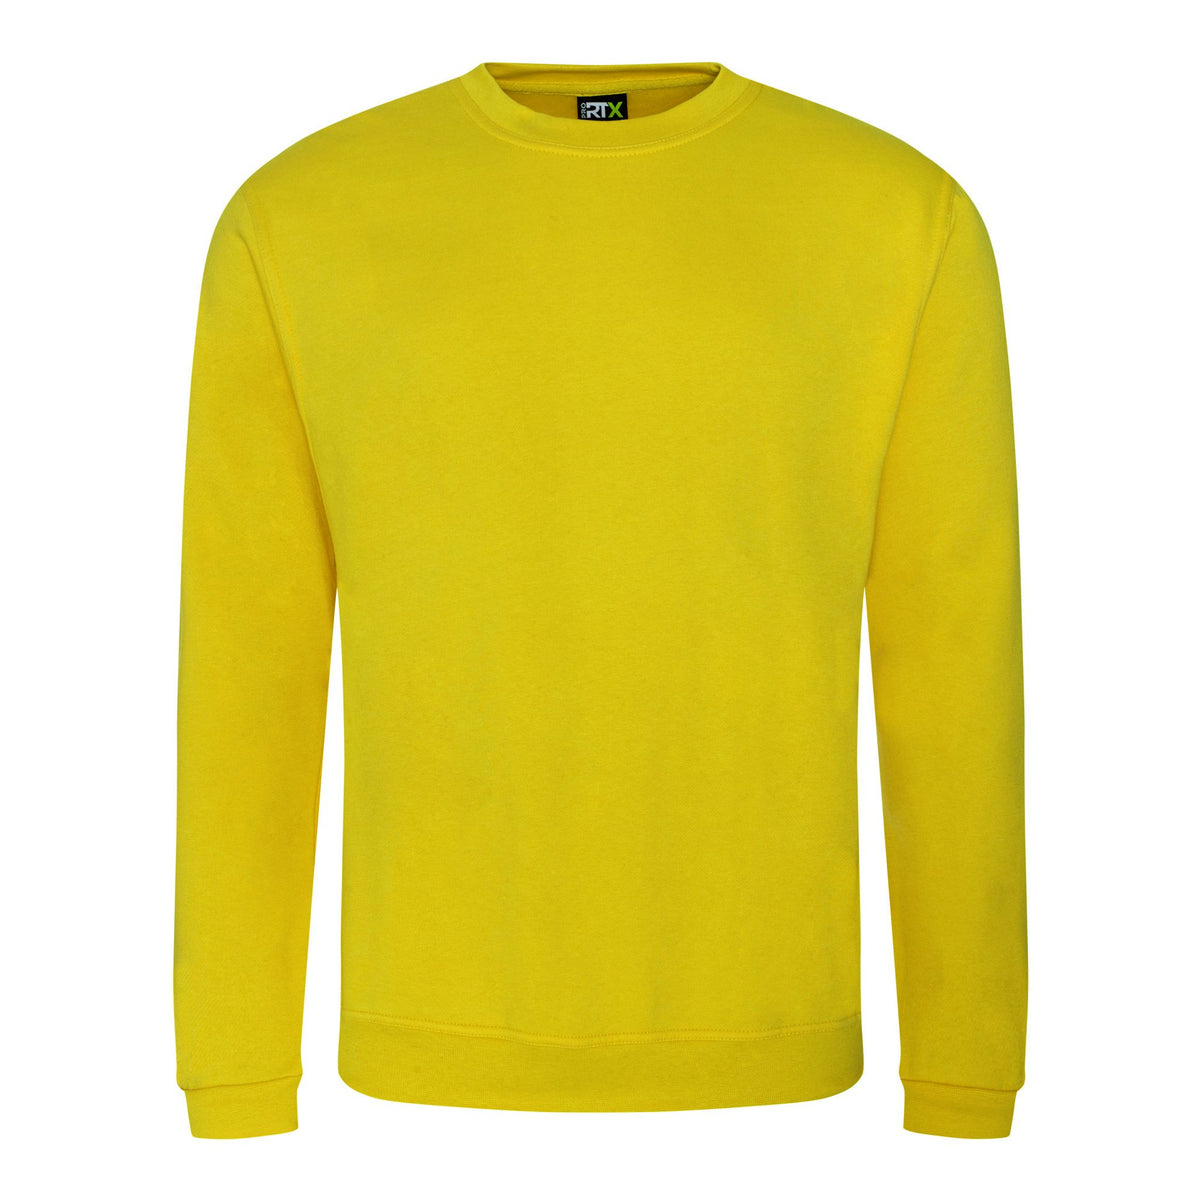 Sweatshirts - Yellow